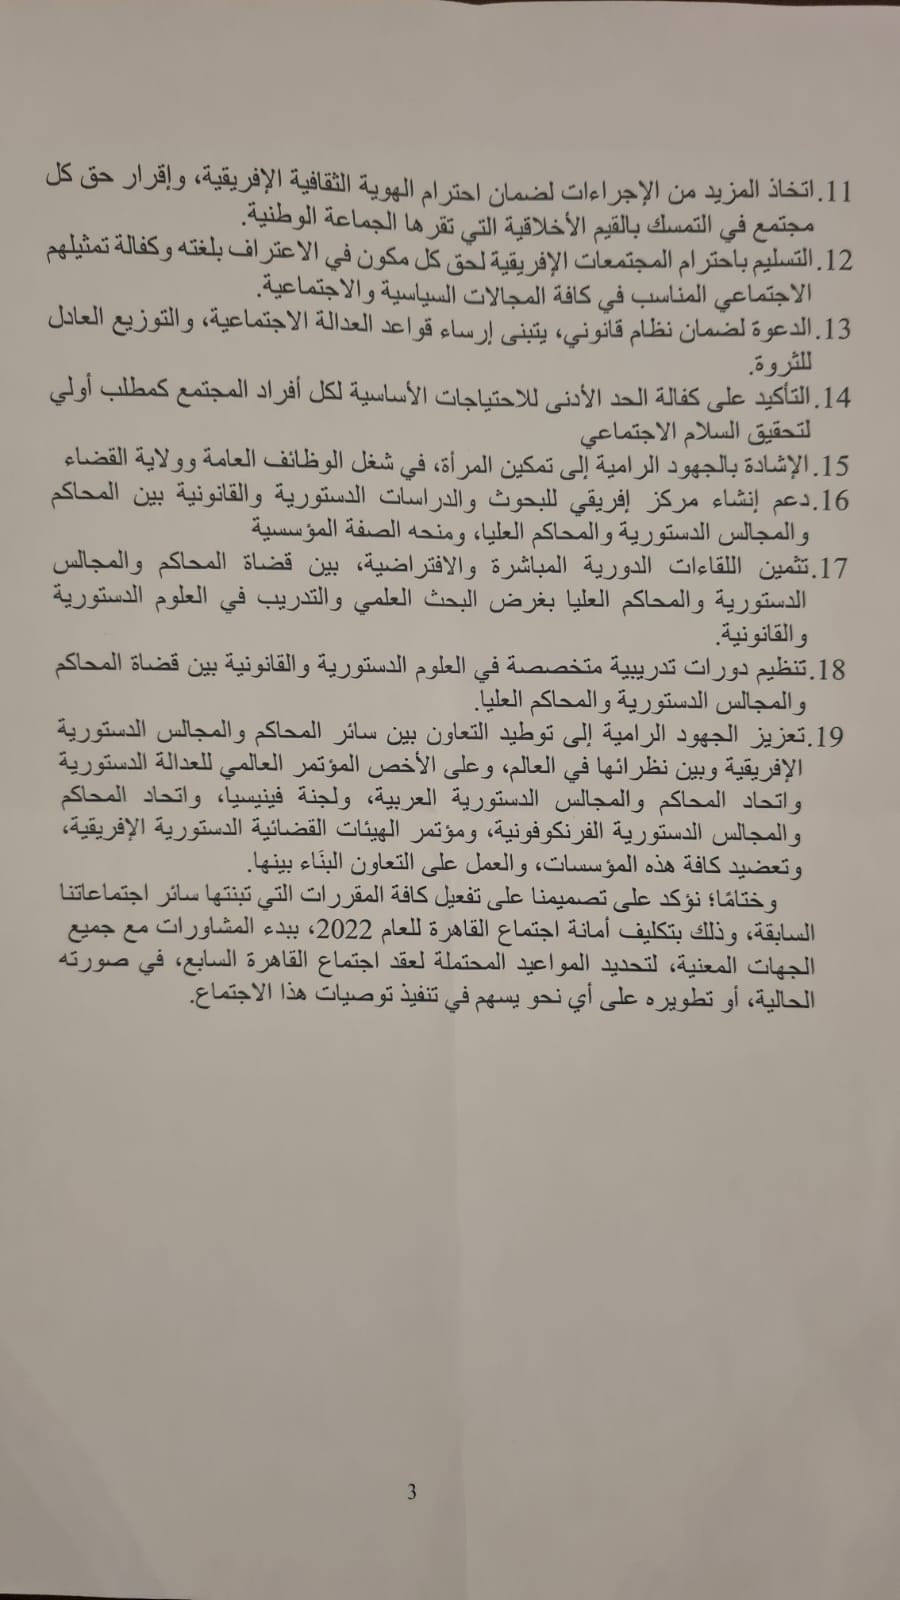  إعلان القاهرة لدعم الحلول التفاوضية (3)